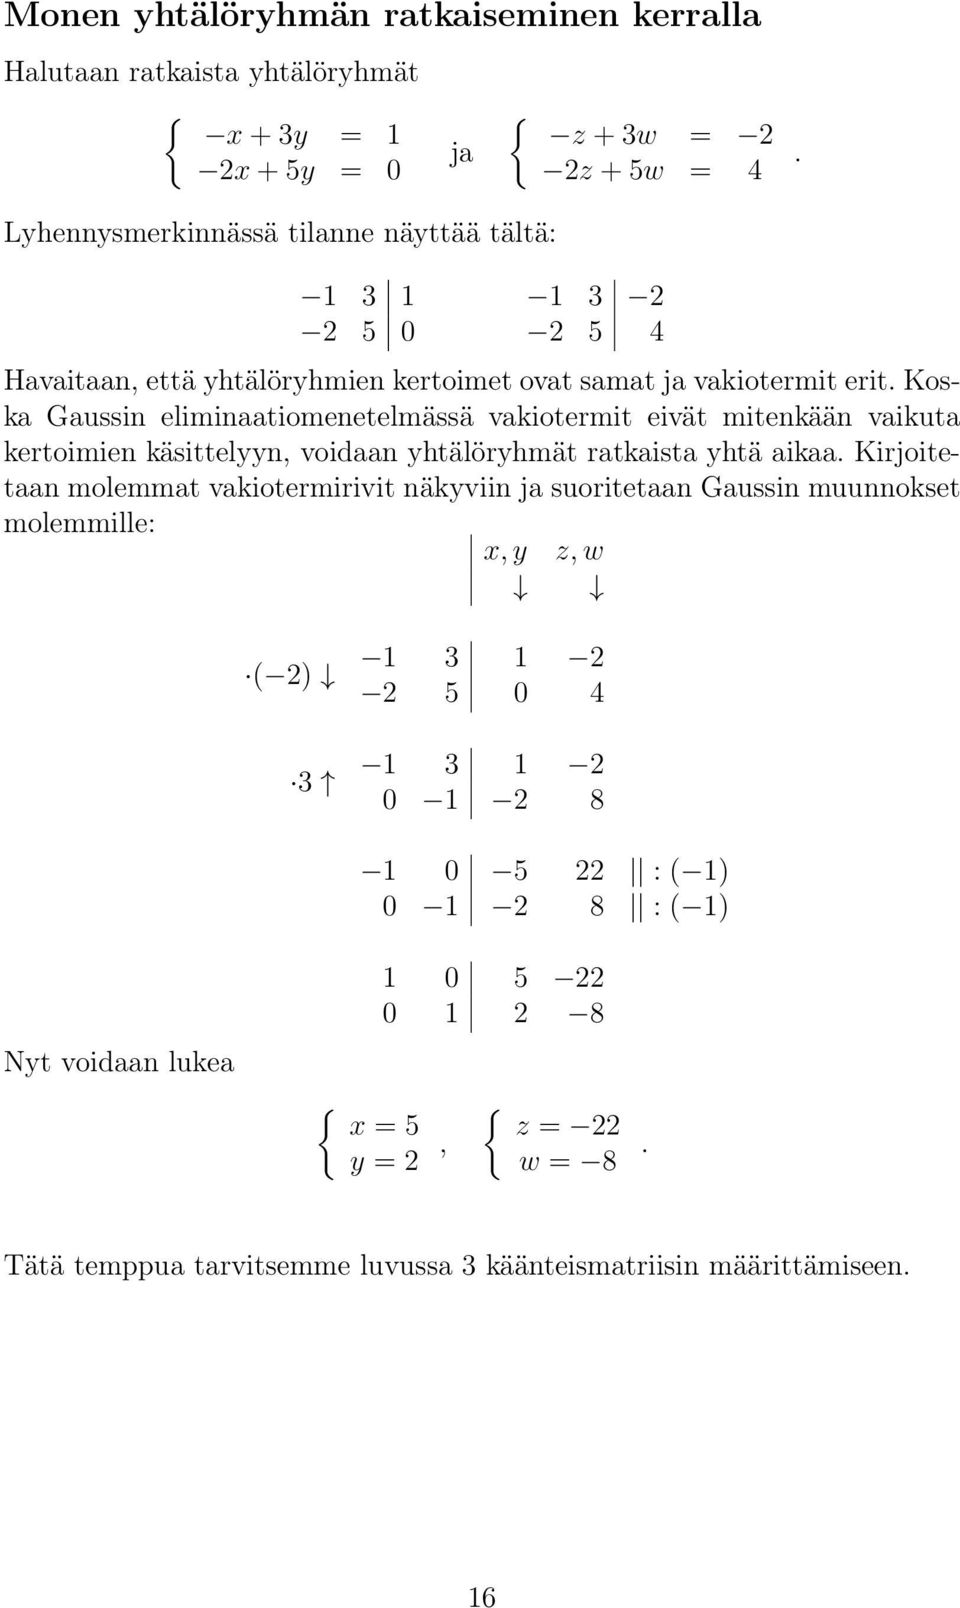 käsittelyyn, voidaan yhtälöryhmät ratkaista yhtä aikaa Kirjoitetaan molemmat vakiotermirivit näkyviin ja suoritetaan Gaussin muunnokset molemmille: x, y z, w ( 2) 3 1 3 1 2 2 5 0